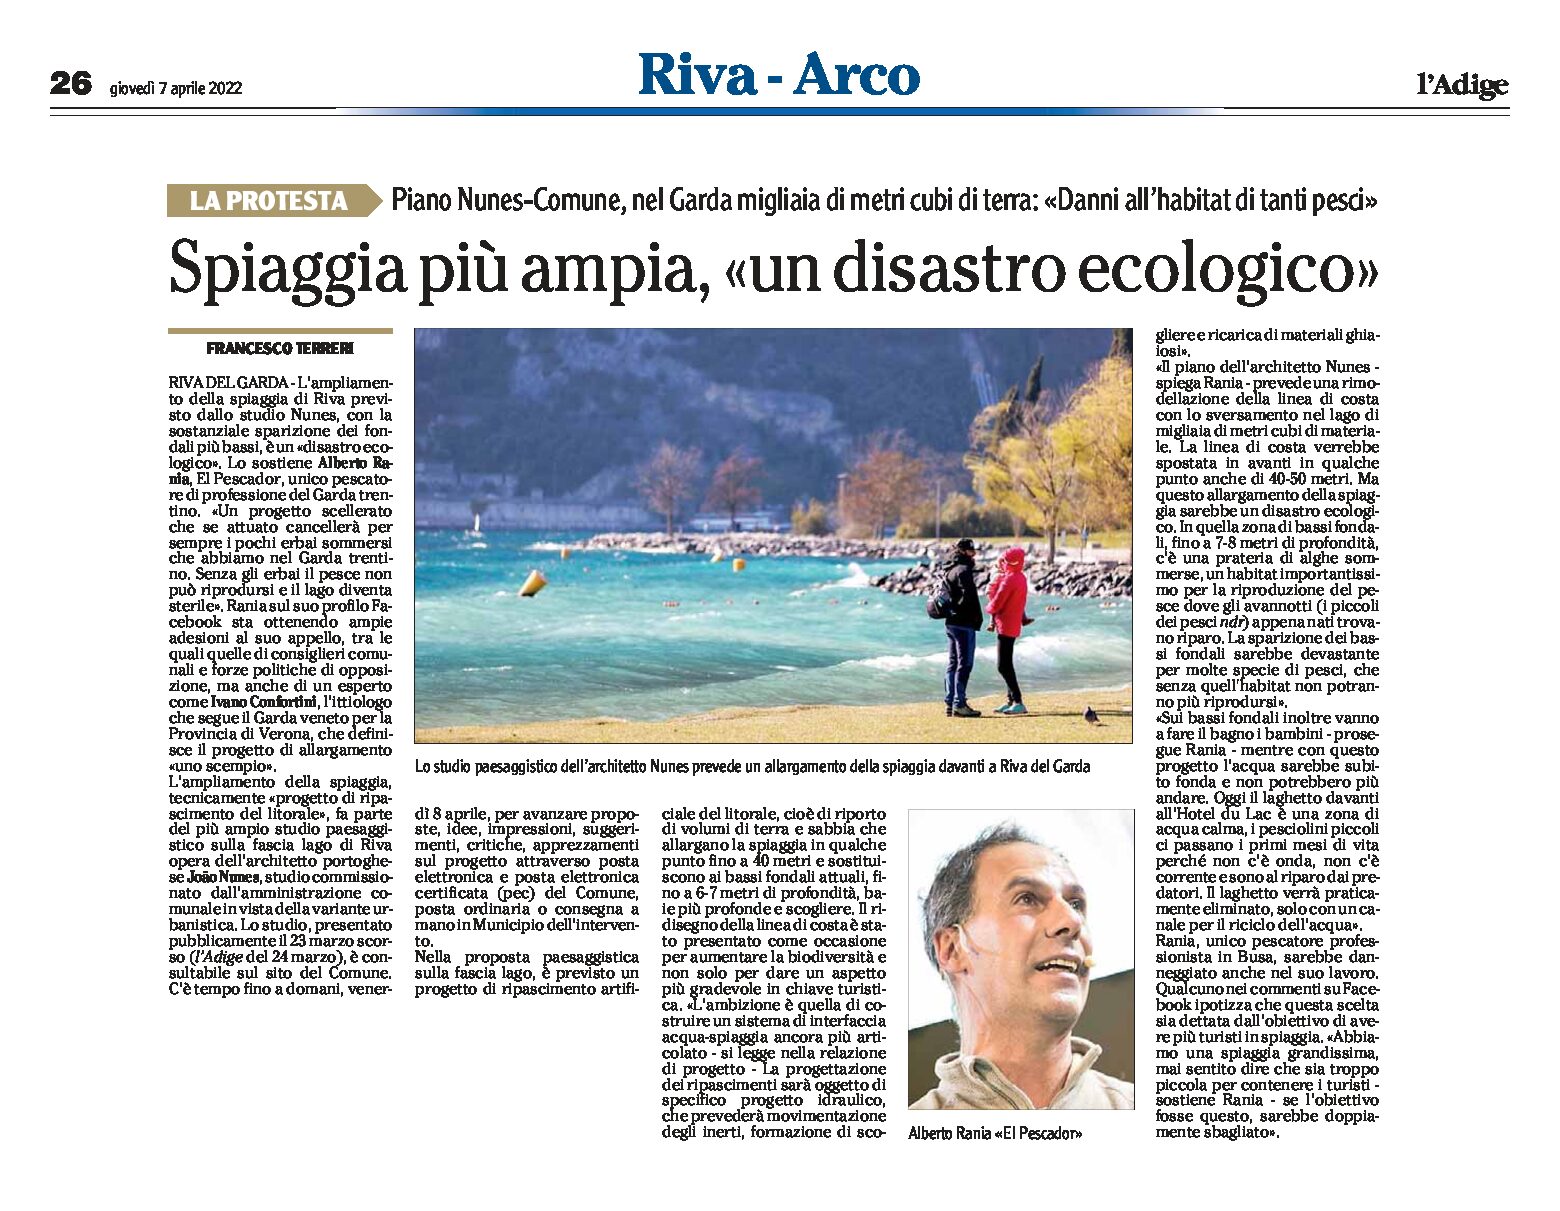 Riva, piano Nunes-Comune: spiaggia più ampia, Rania “un disastro ecologico”